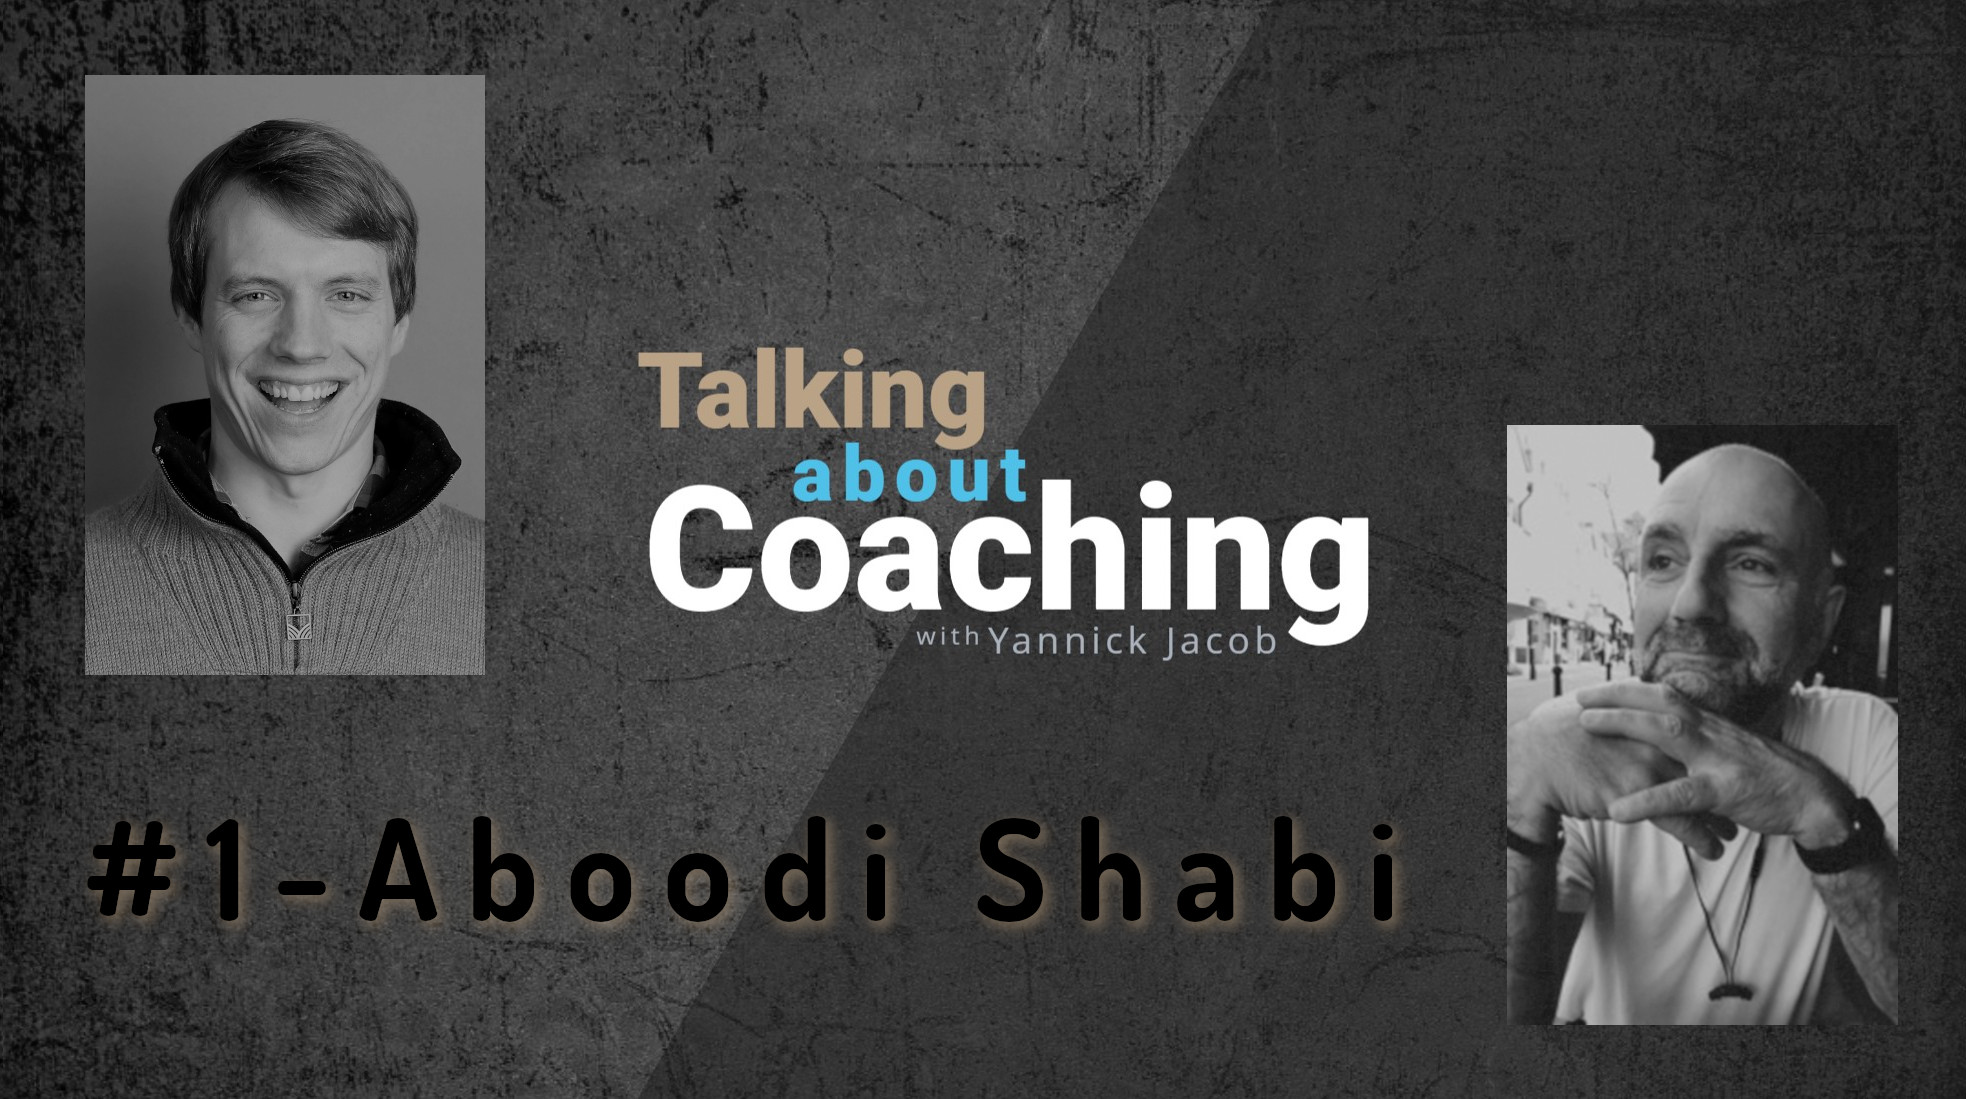 Ontological Coaching, Talking about Coaching, Aboodi Shabi, Yannick Jacob